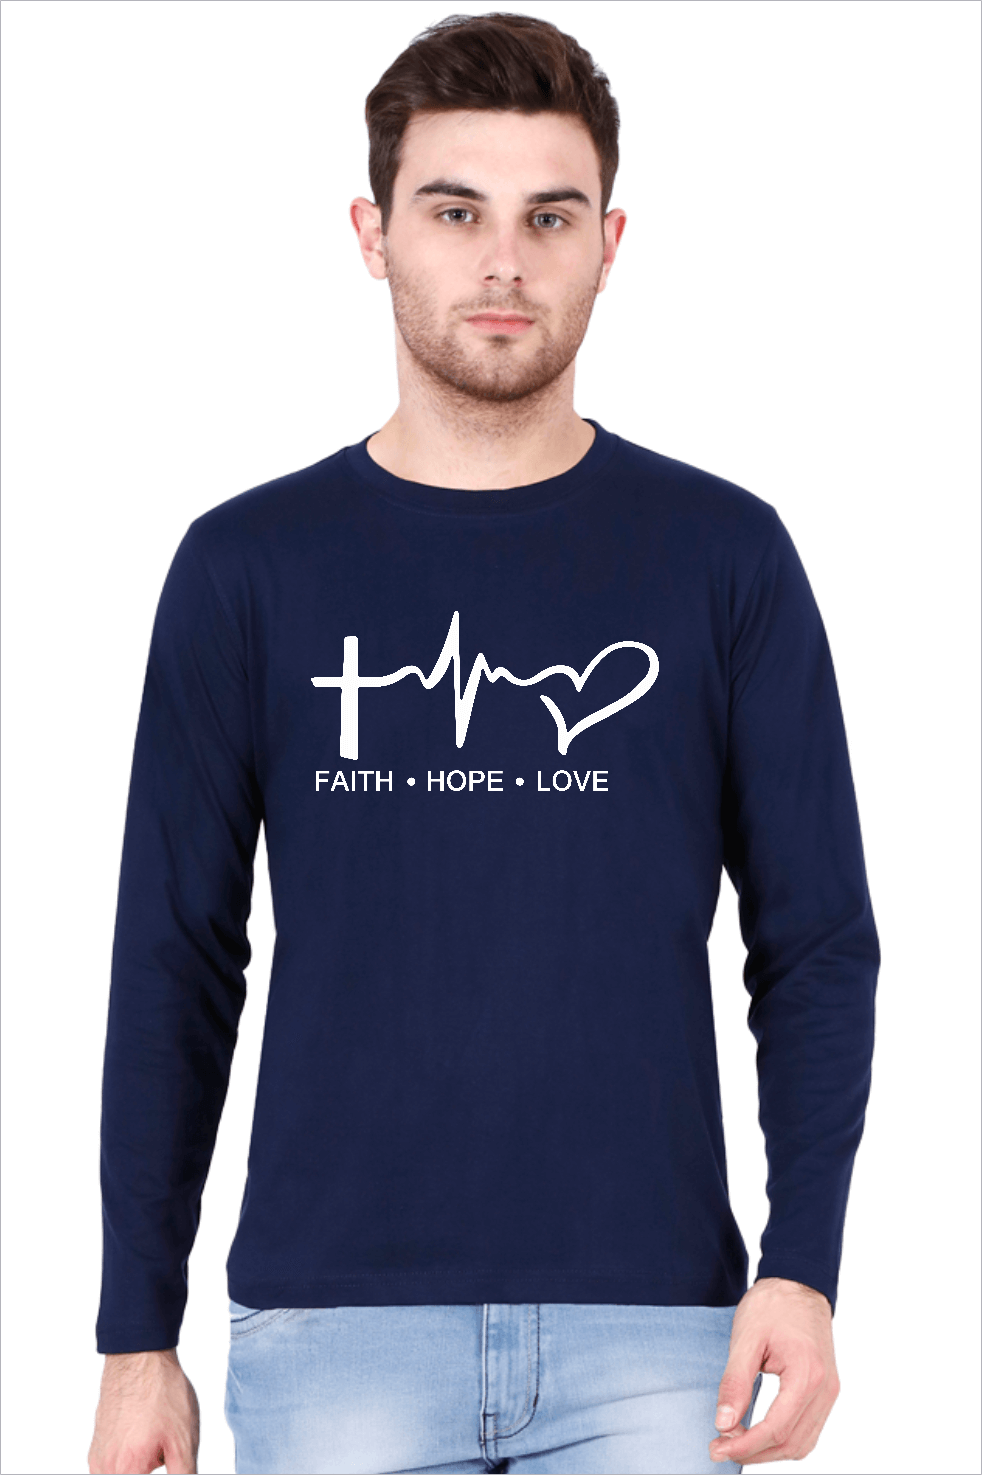 Living Words Men Round Neck T Shirt S / Navy Blue Faith Hope Love